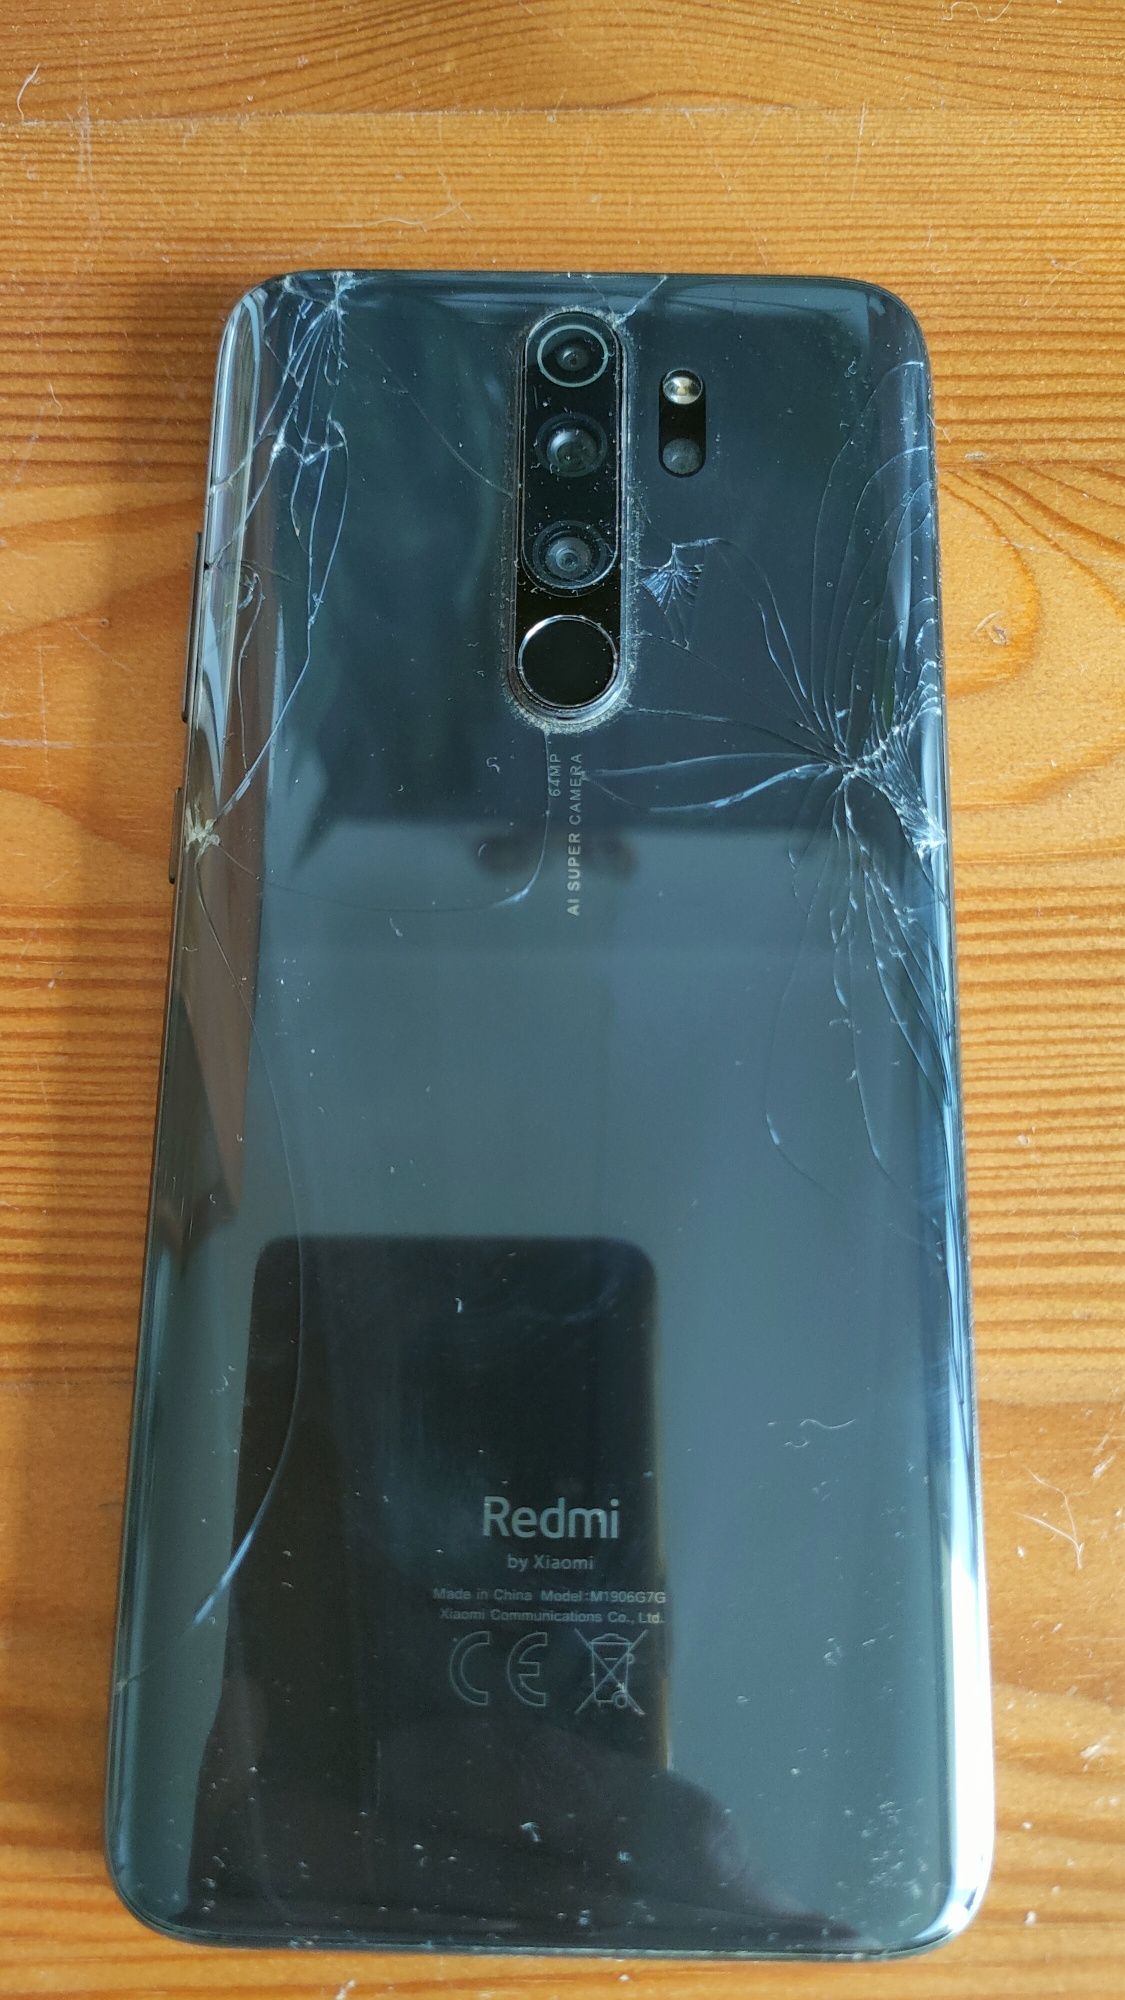 Redmi Note 8 Pro 6/64 GB